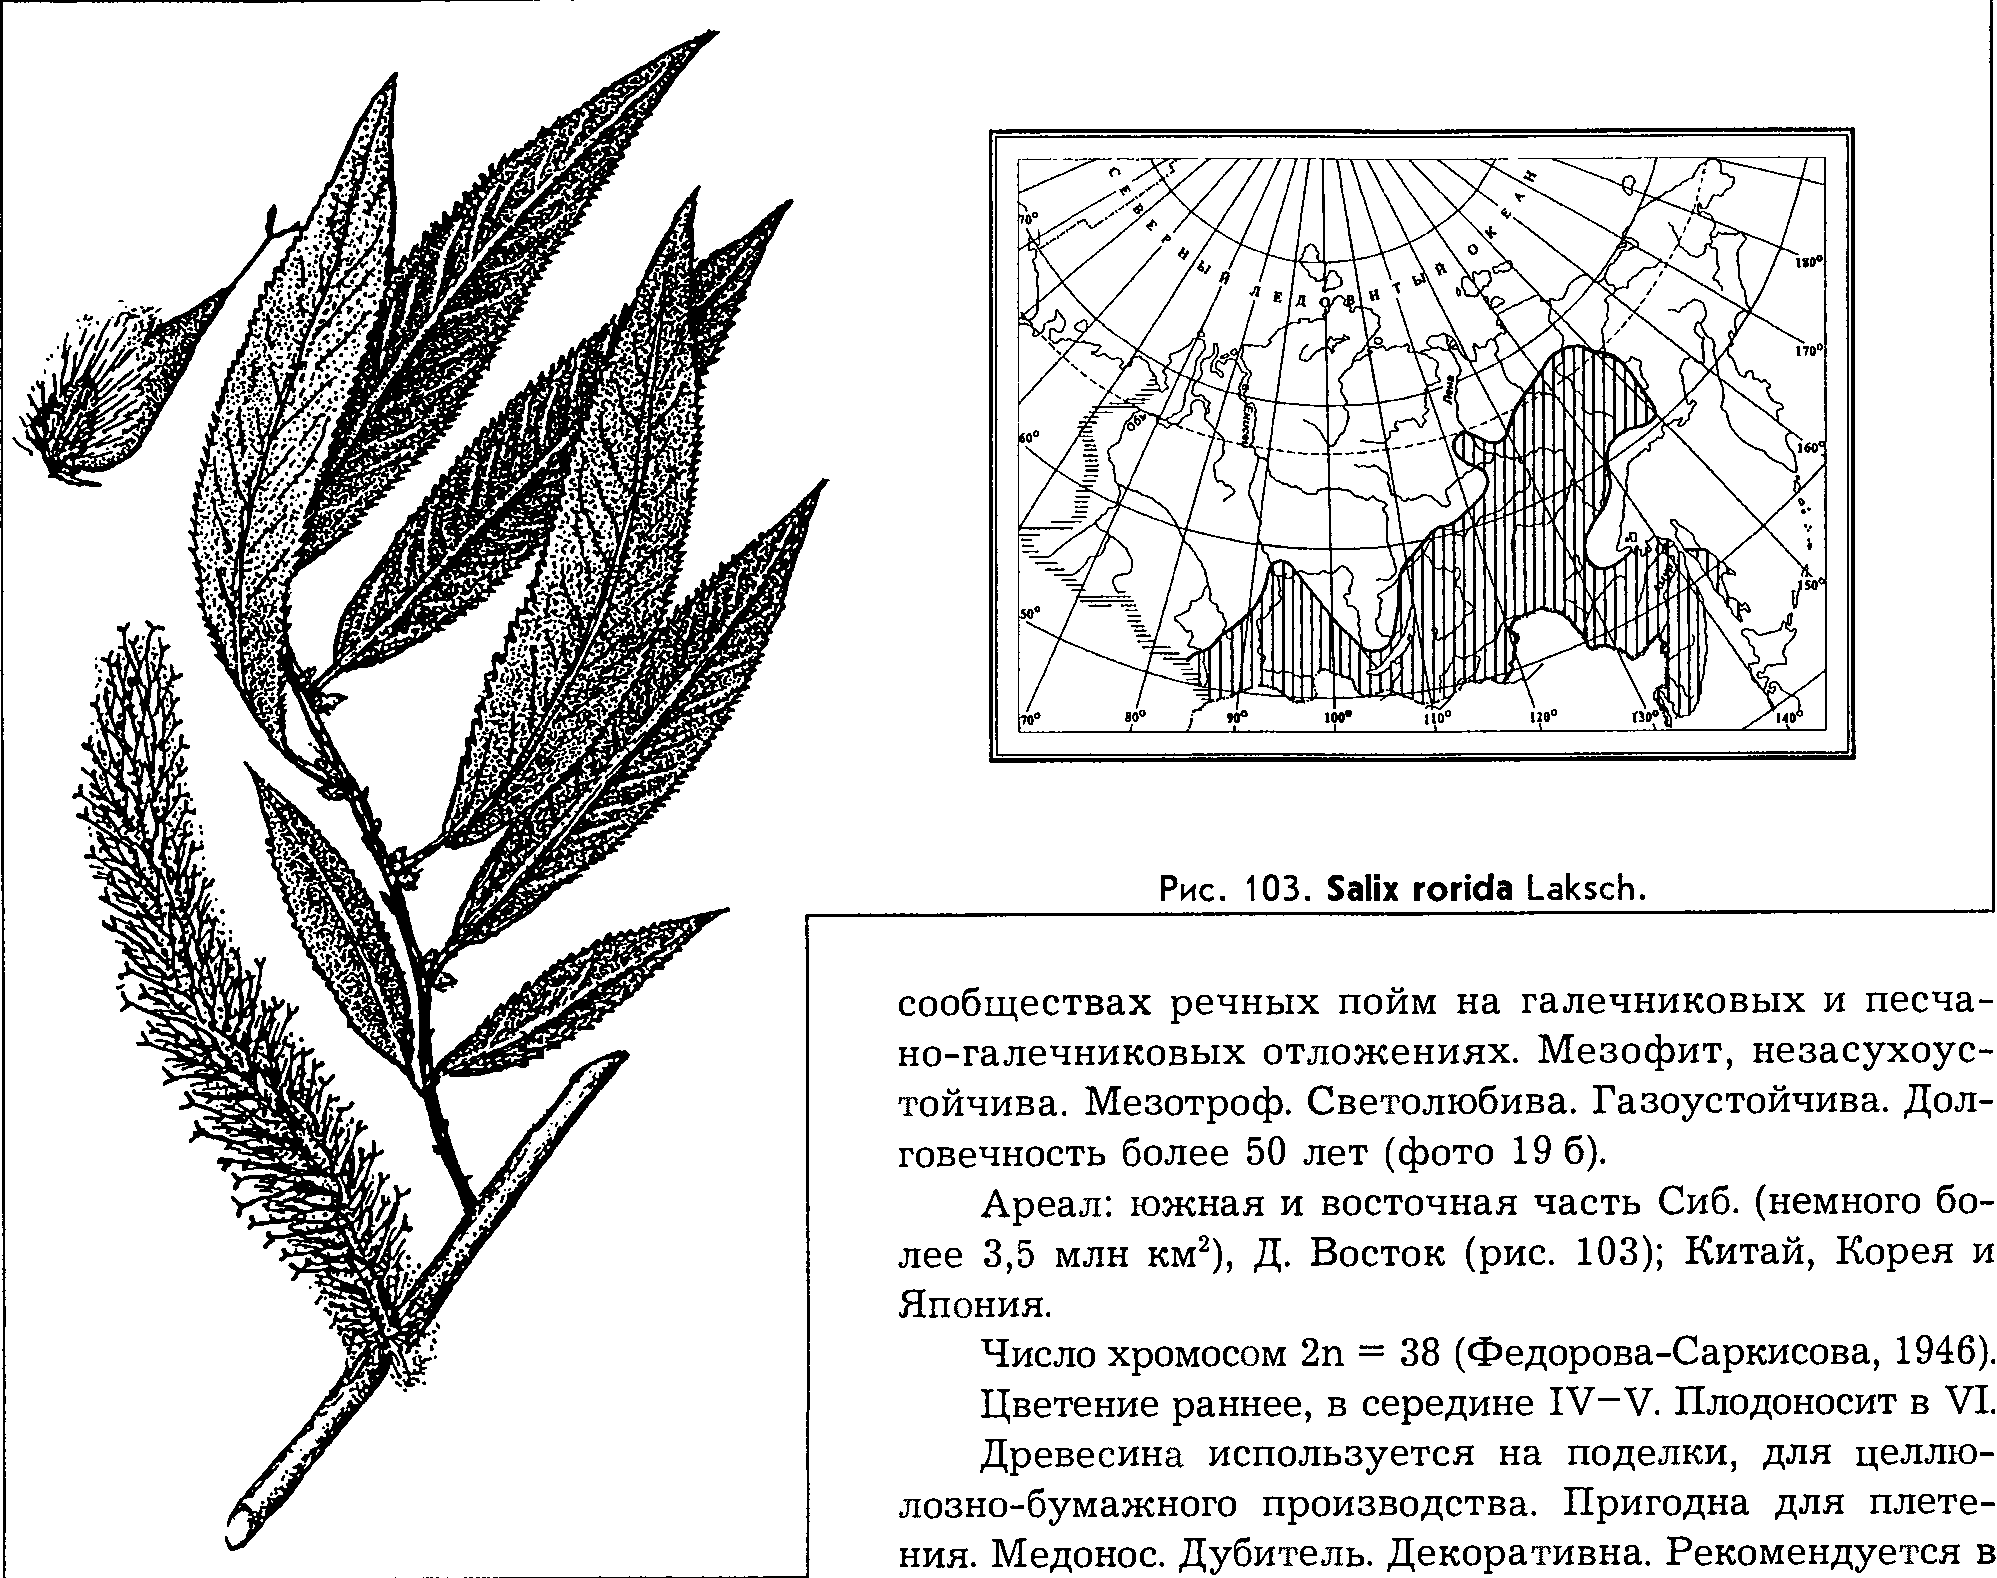 Salix rorida Laksch. — Ива росистая (Ш) Salix-28